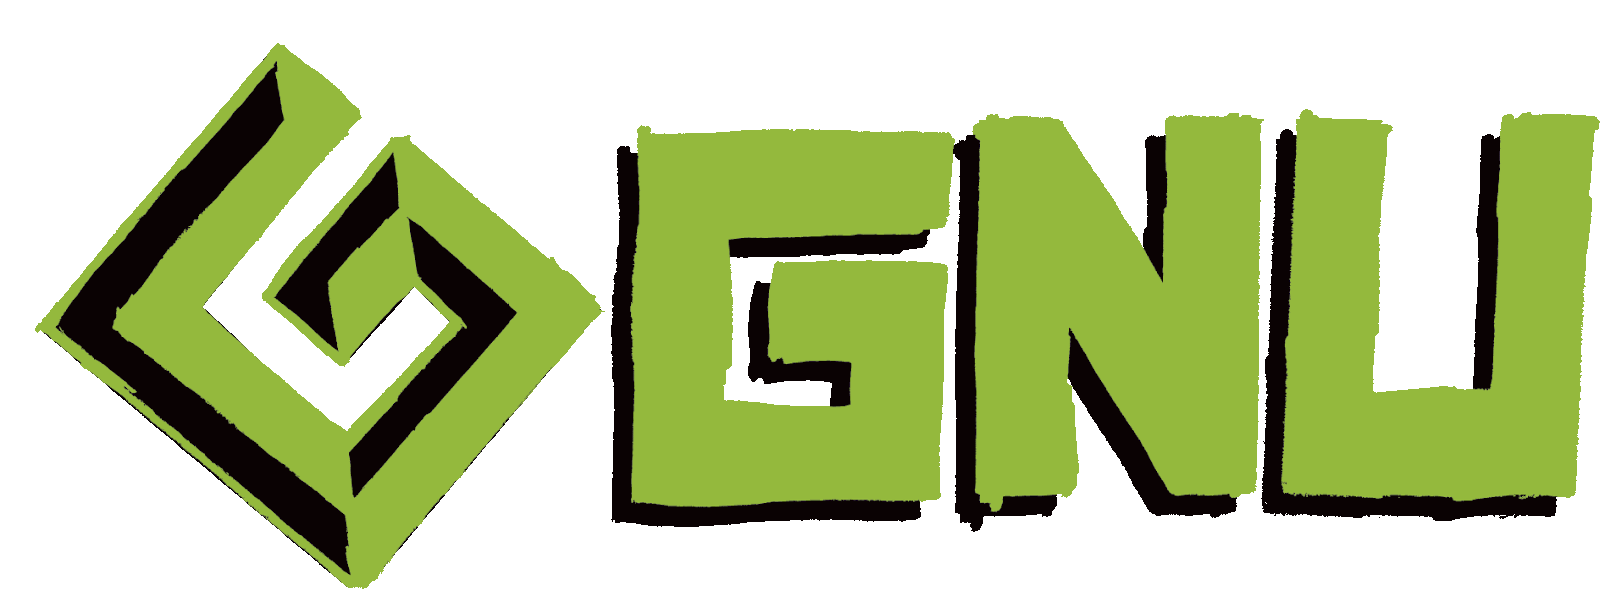 GNU -virksomhedslogoer